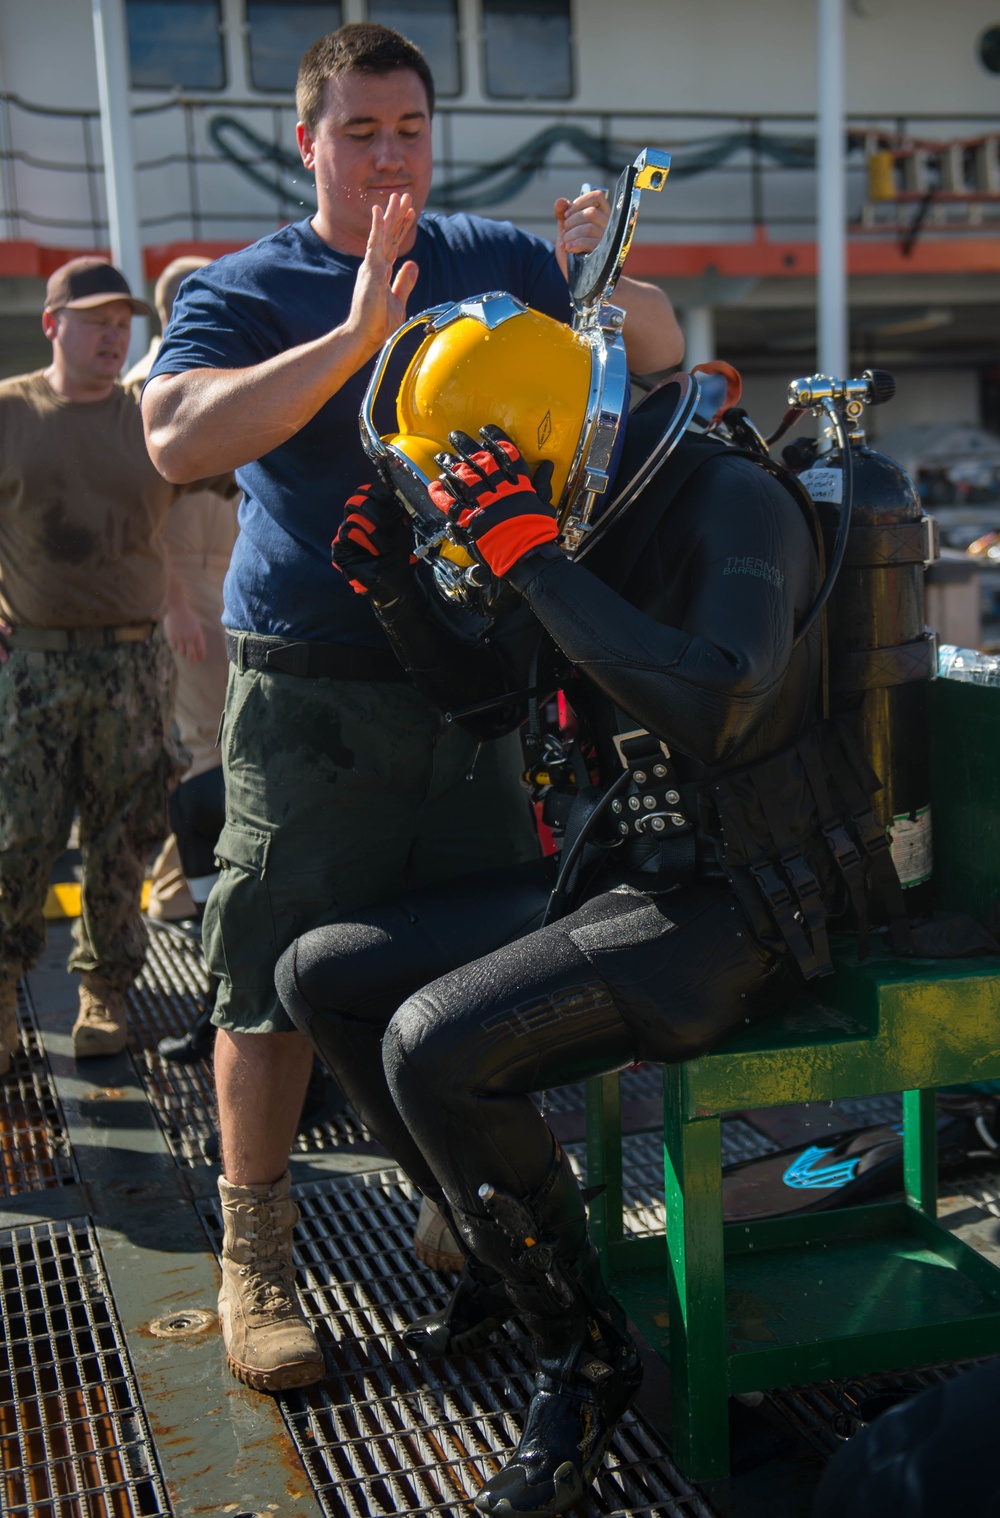 Navy Diver's Underwater Rescue Training